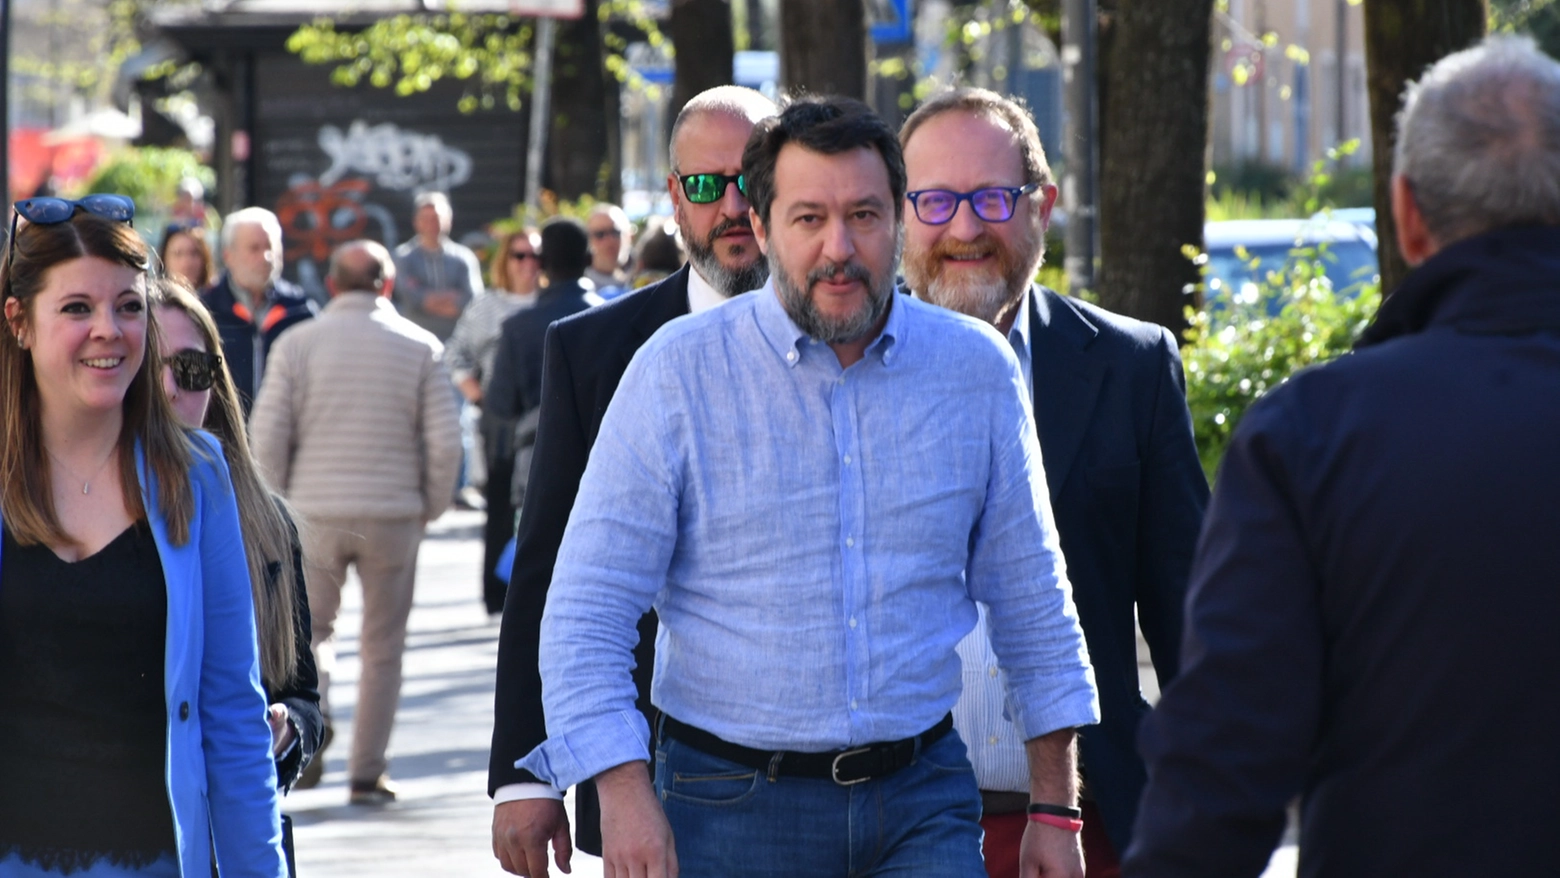 “Matteo Salvini in pochi mesi di governo - dicono il segretario regionale Lega Umbria Virginio Caparvi e il vicesegretario Valeria Alessandrini - ha dimostrato che le cose si possono fare se c'è volontà di farle”